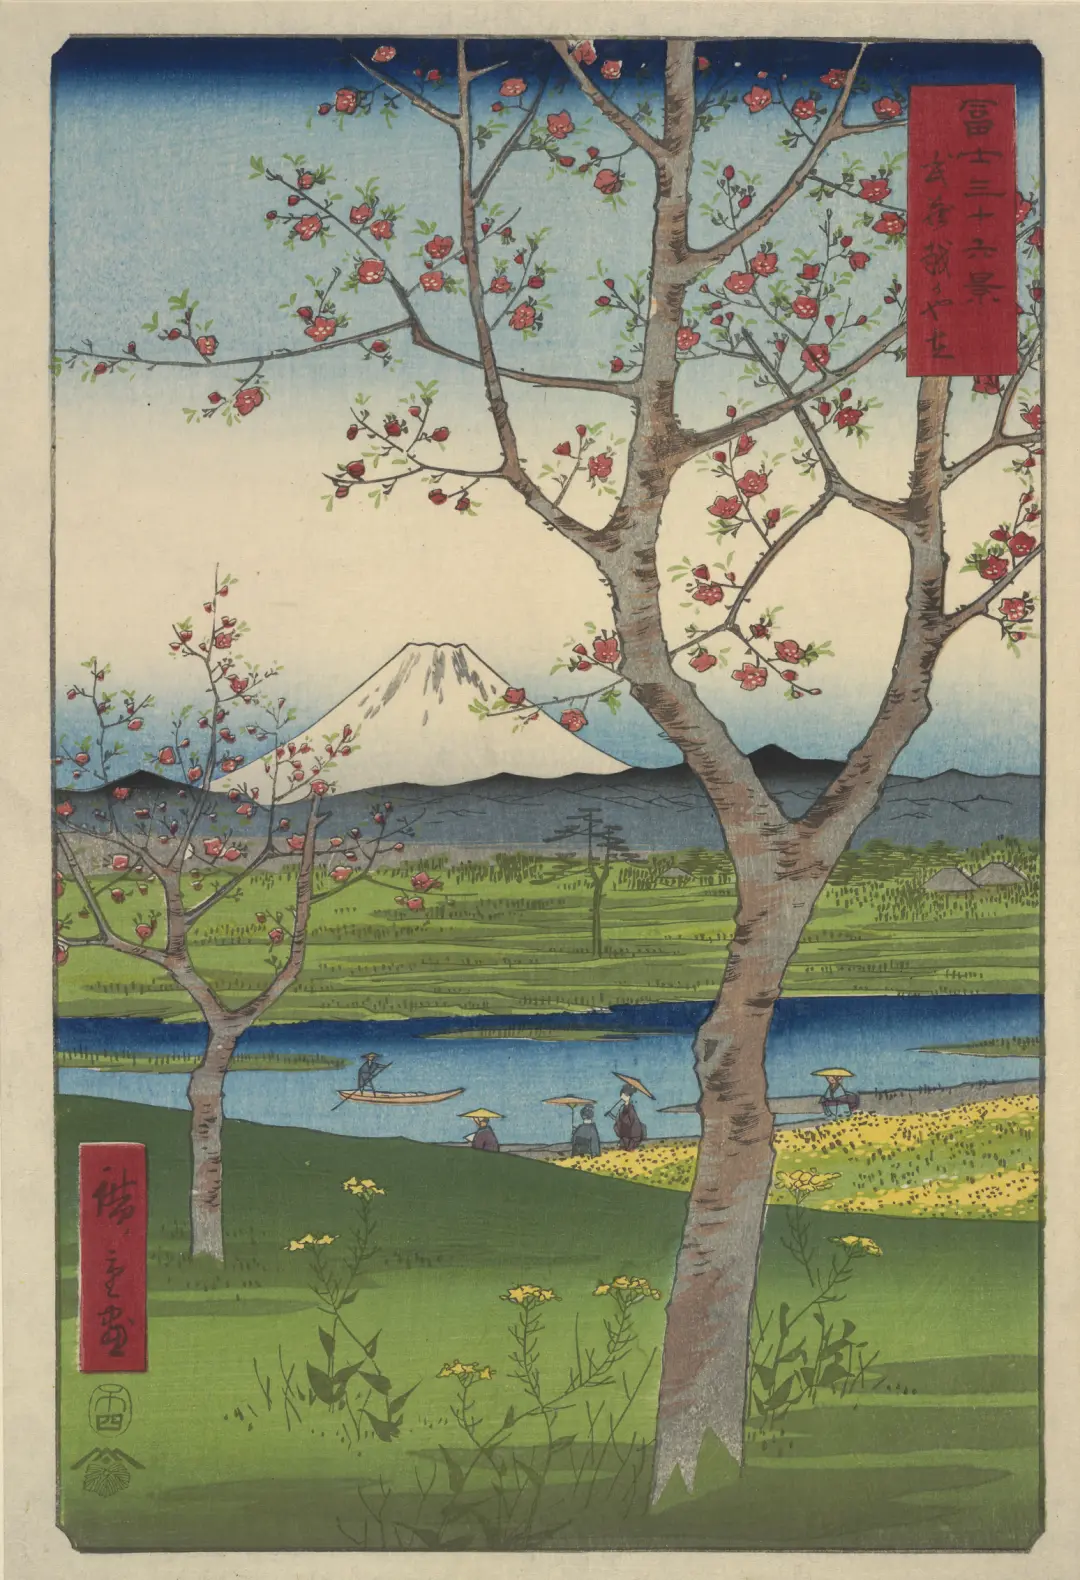 歌川广重（1797-1858），《富士三十六景之武蔵越谷左》，彩色木刻版画，1859（待考证），日本。